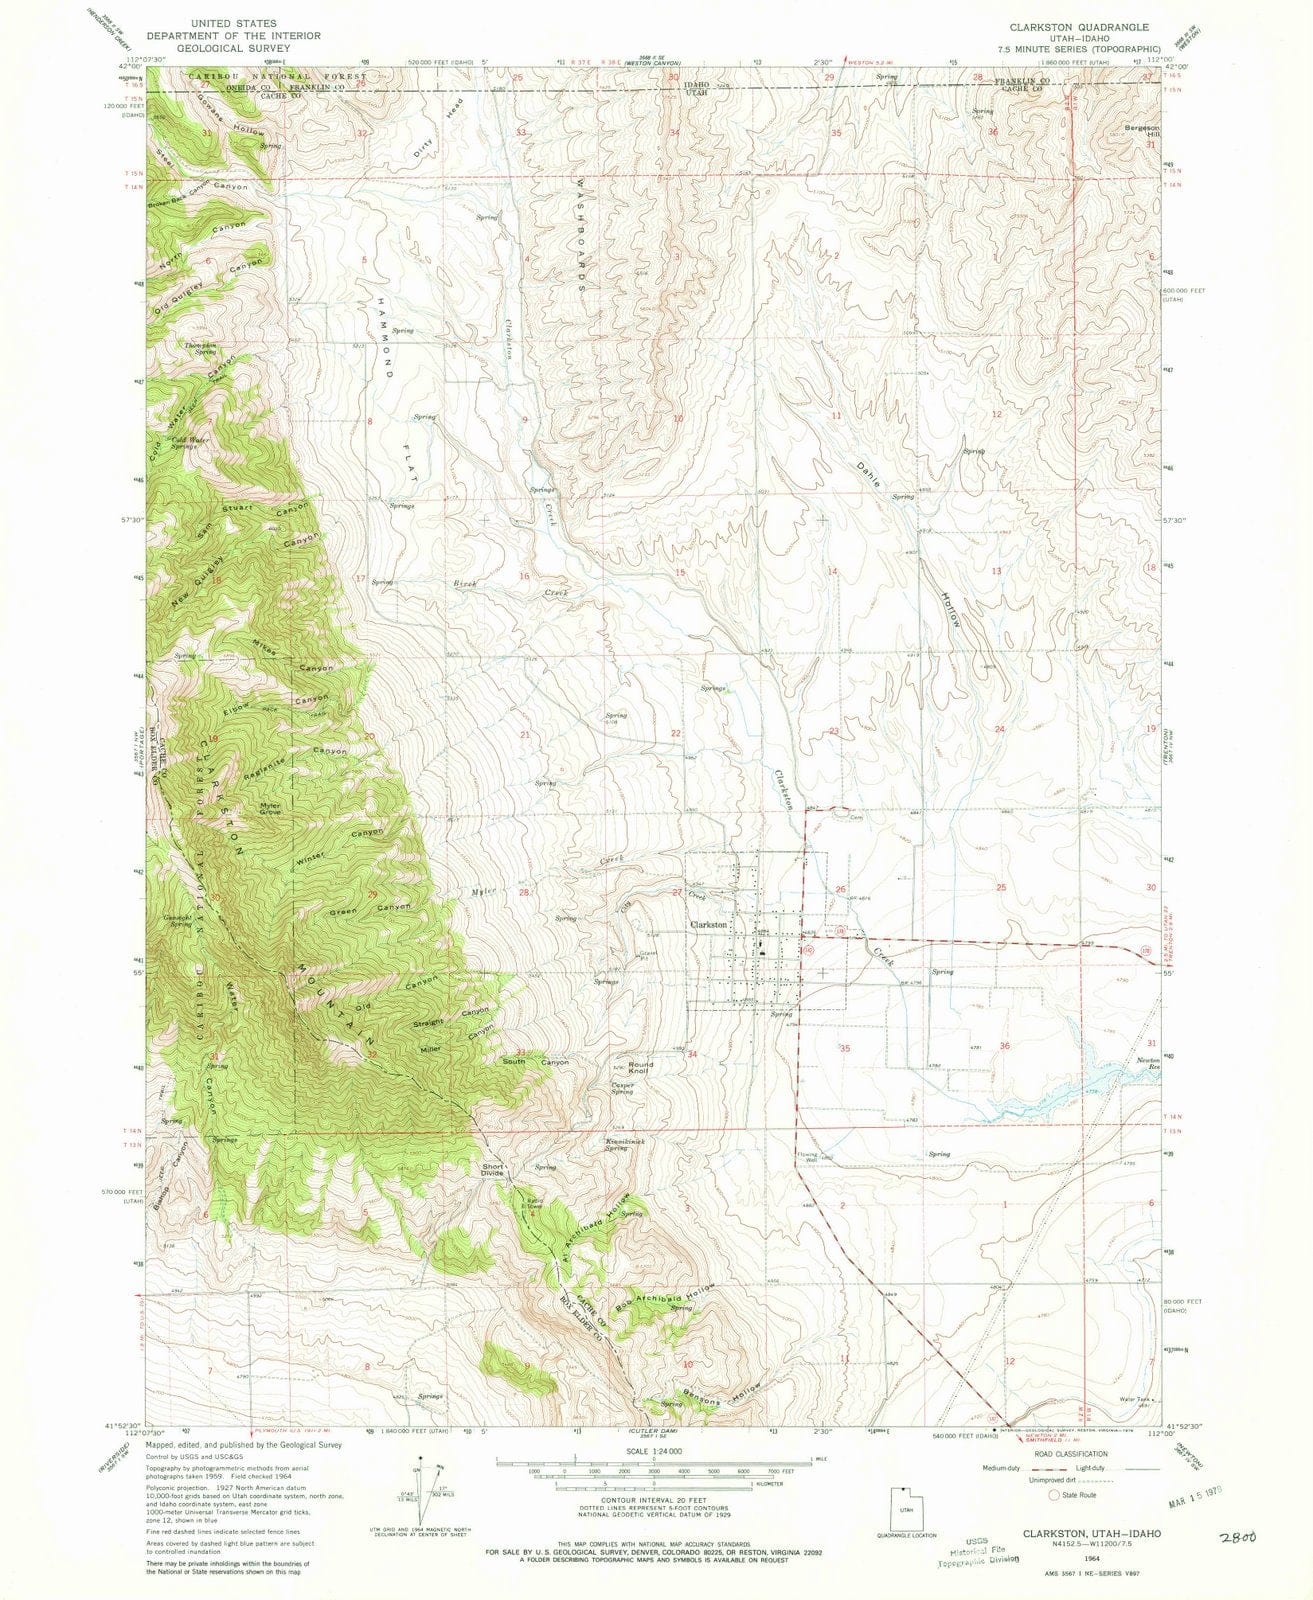 1964 Clarkston, UT - Utah - USGS Topographic Map